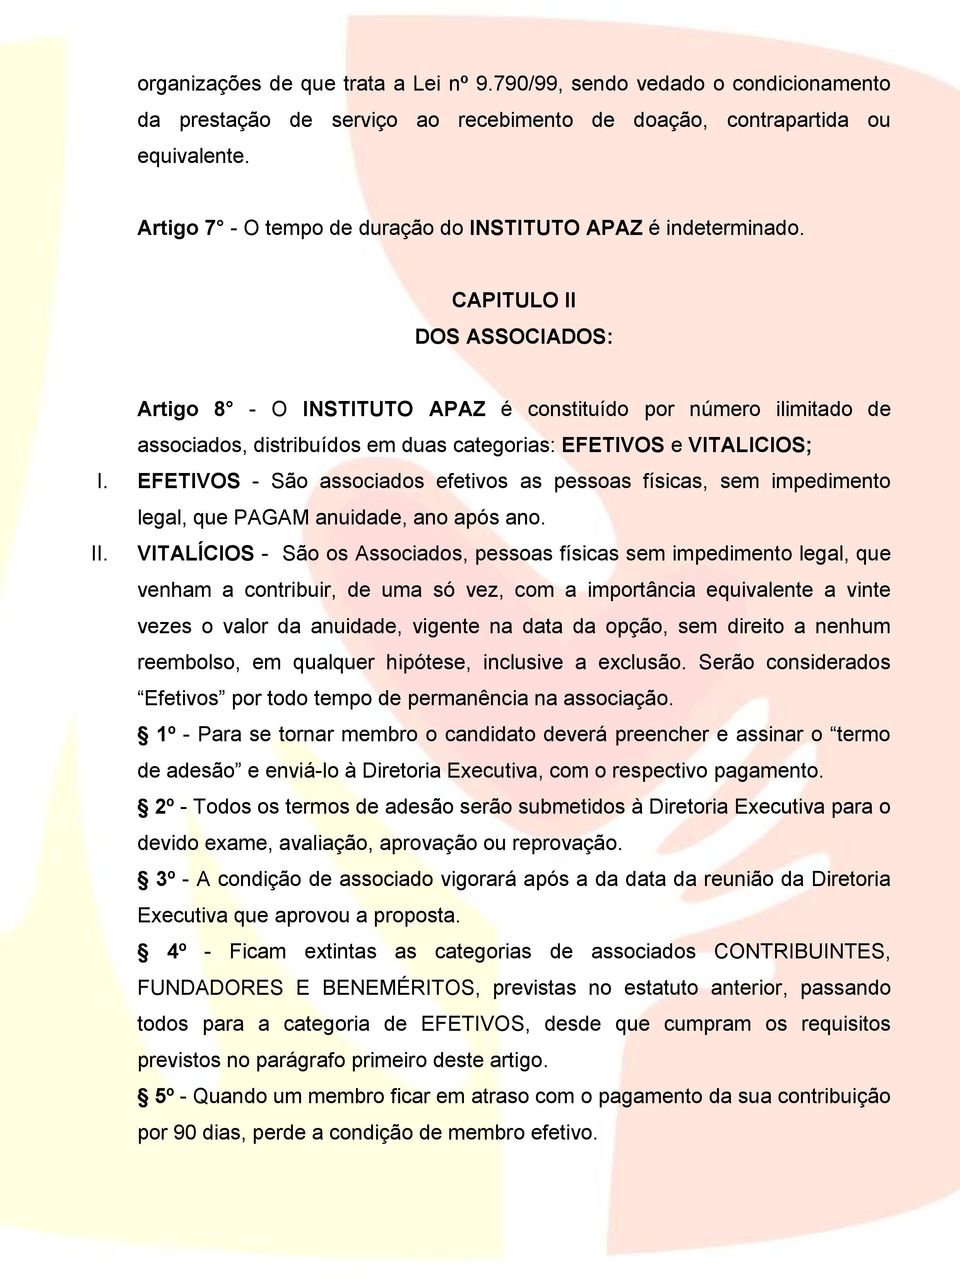 CAPITULO II DOS ASSOCIADOS: Artigo 8 - O INSTITUTO APAZ é constituído por número ilimitado de associados, distribuídos em duas categorias: EFETIVOS e VITALICIOS; I.